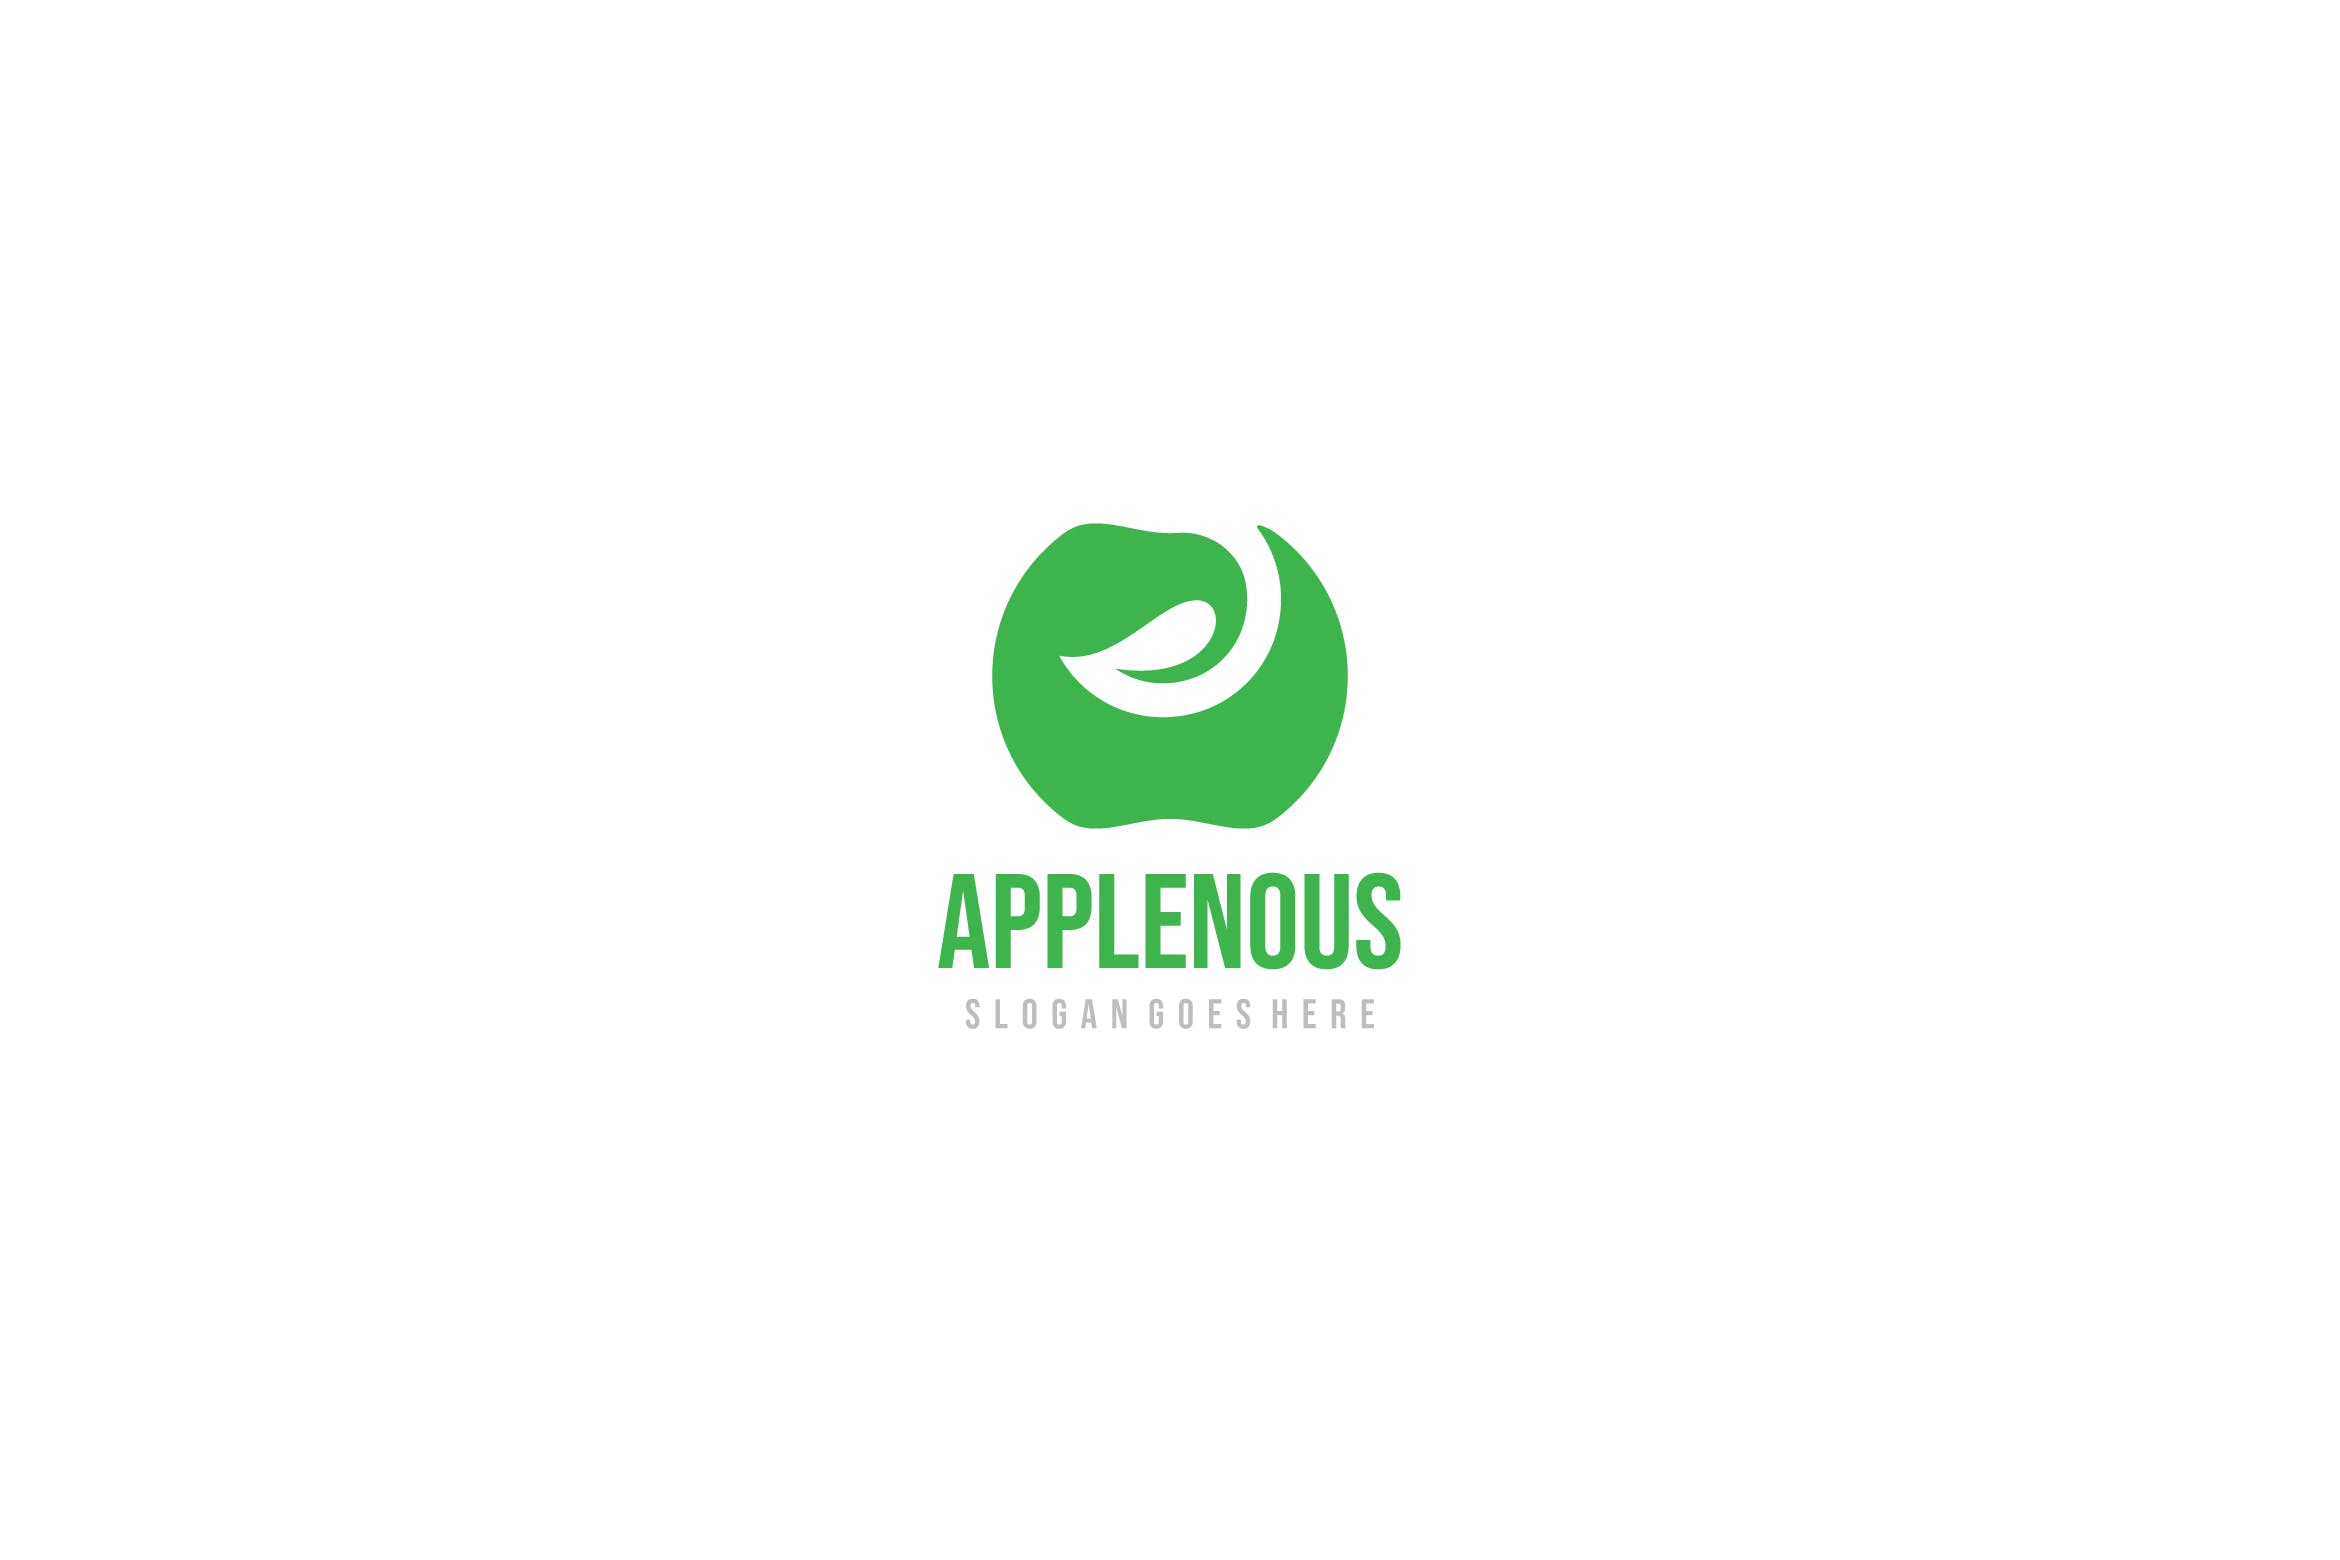 创意苹果图形Logo设计蚂蚁素材精选模板 Apple Logo插图